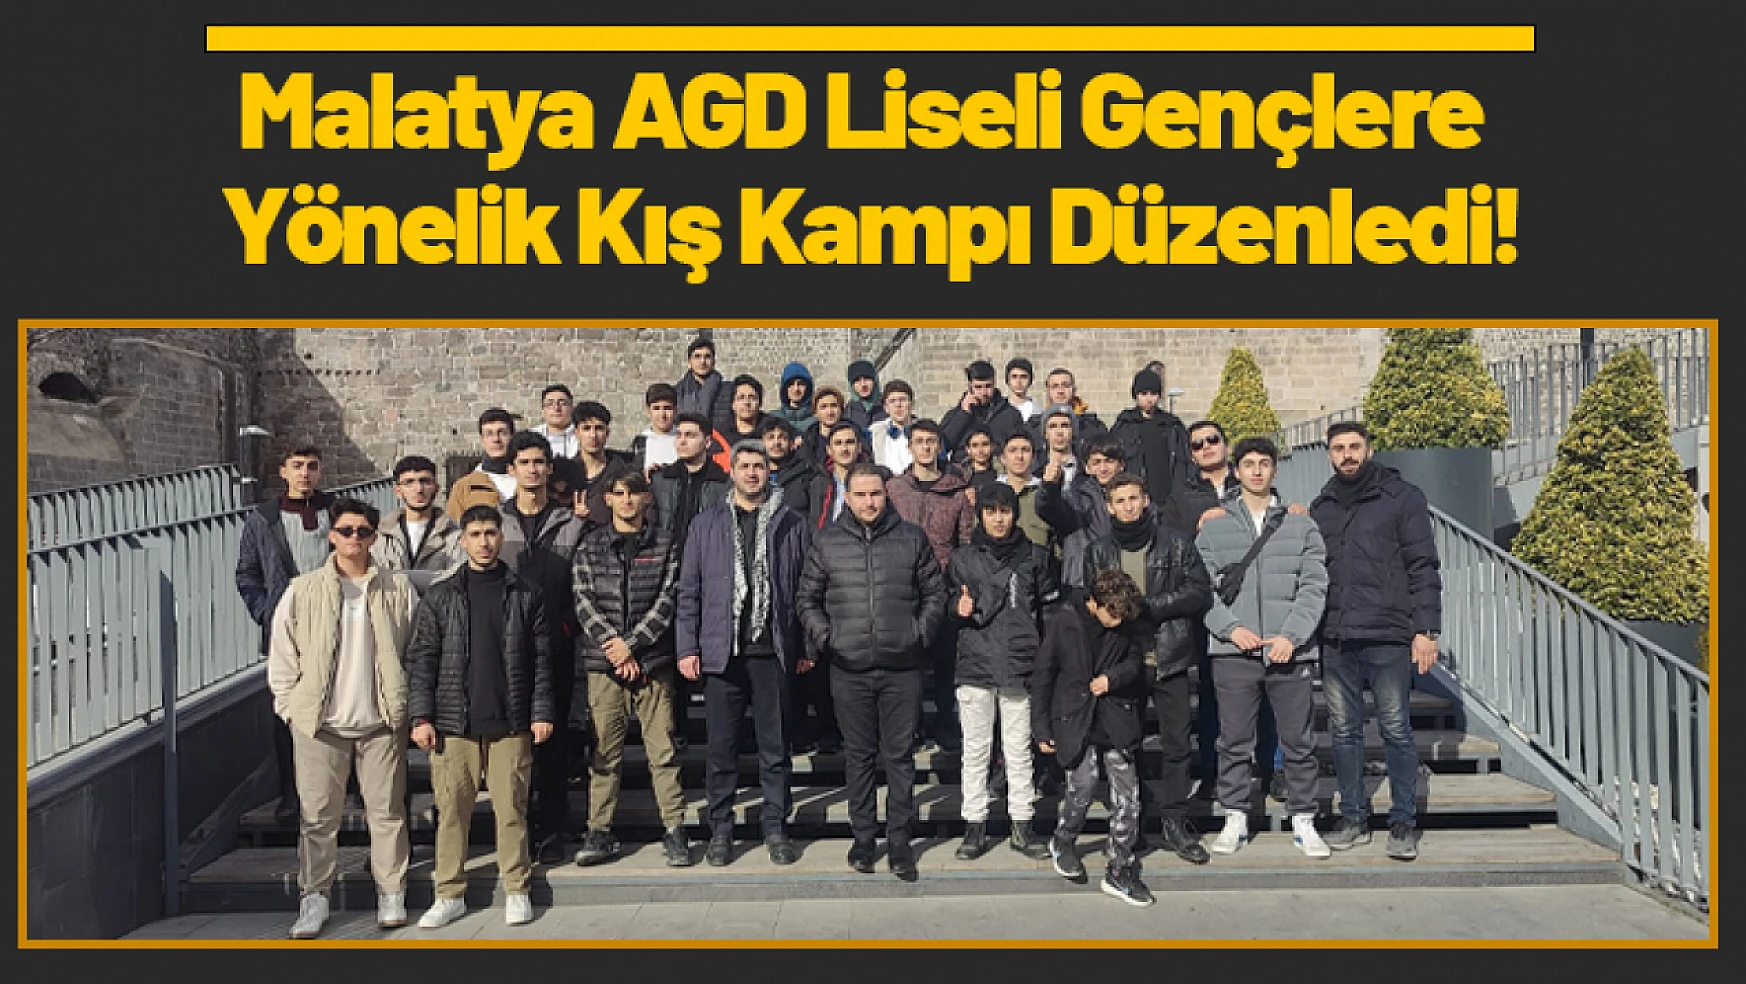 Malatya AGD Liseli Gençlere Yönelik Kış Kampı Düzenledi!